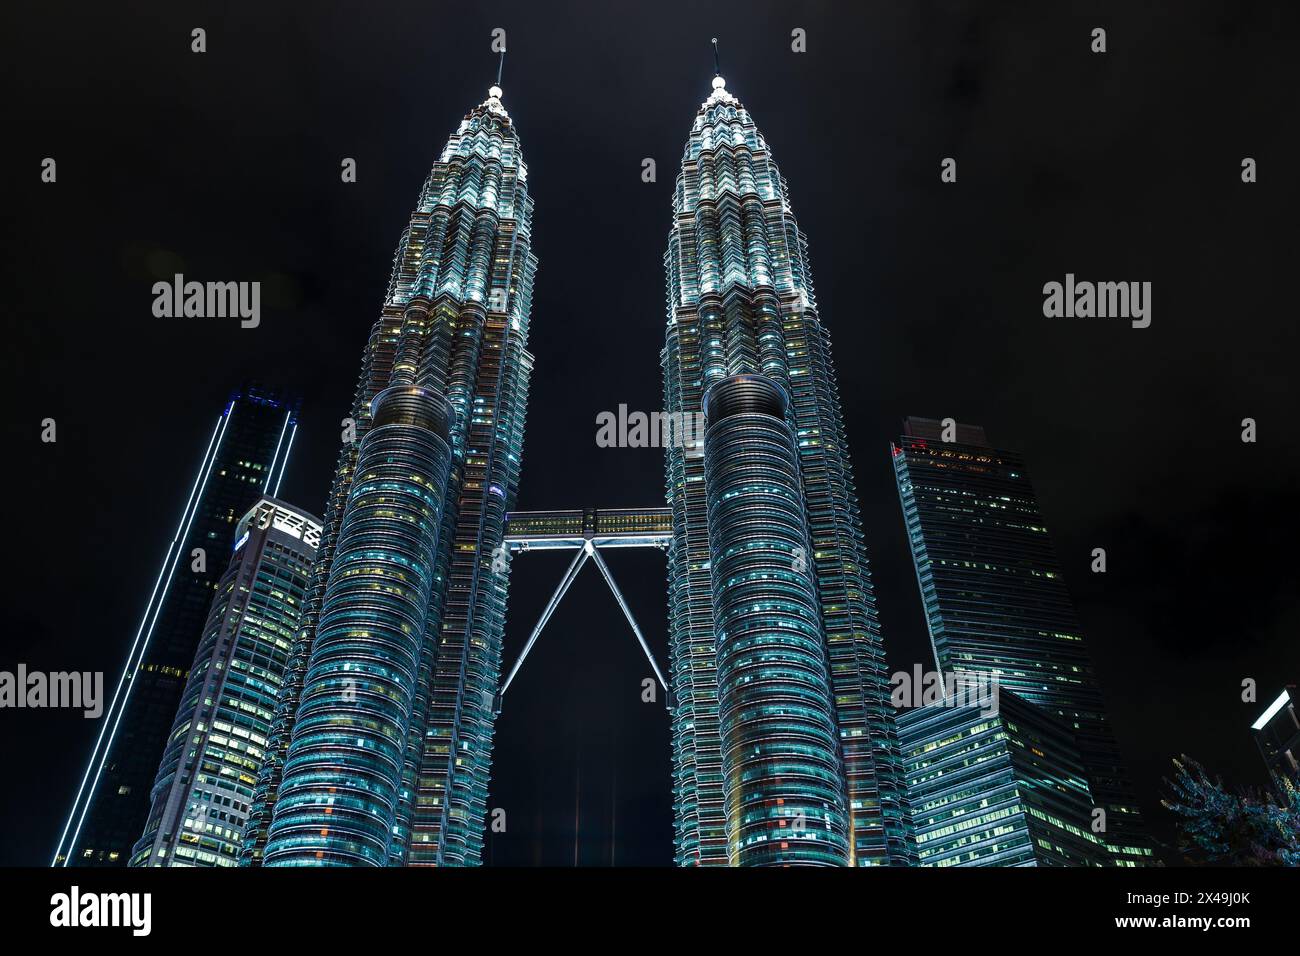 Kuala Lumpur, Malaisie - 28 novembre 2019 : les tours jumelles Petronas avec éclairage nocturne sont sous le ciel sombre Banque D'Images